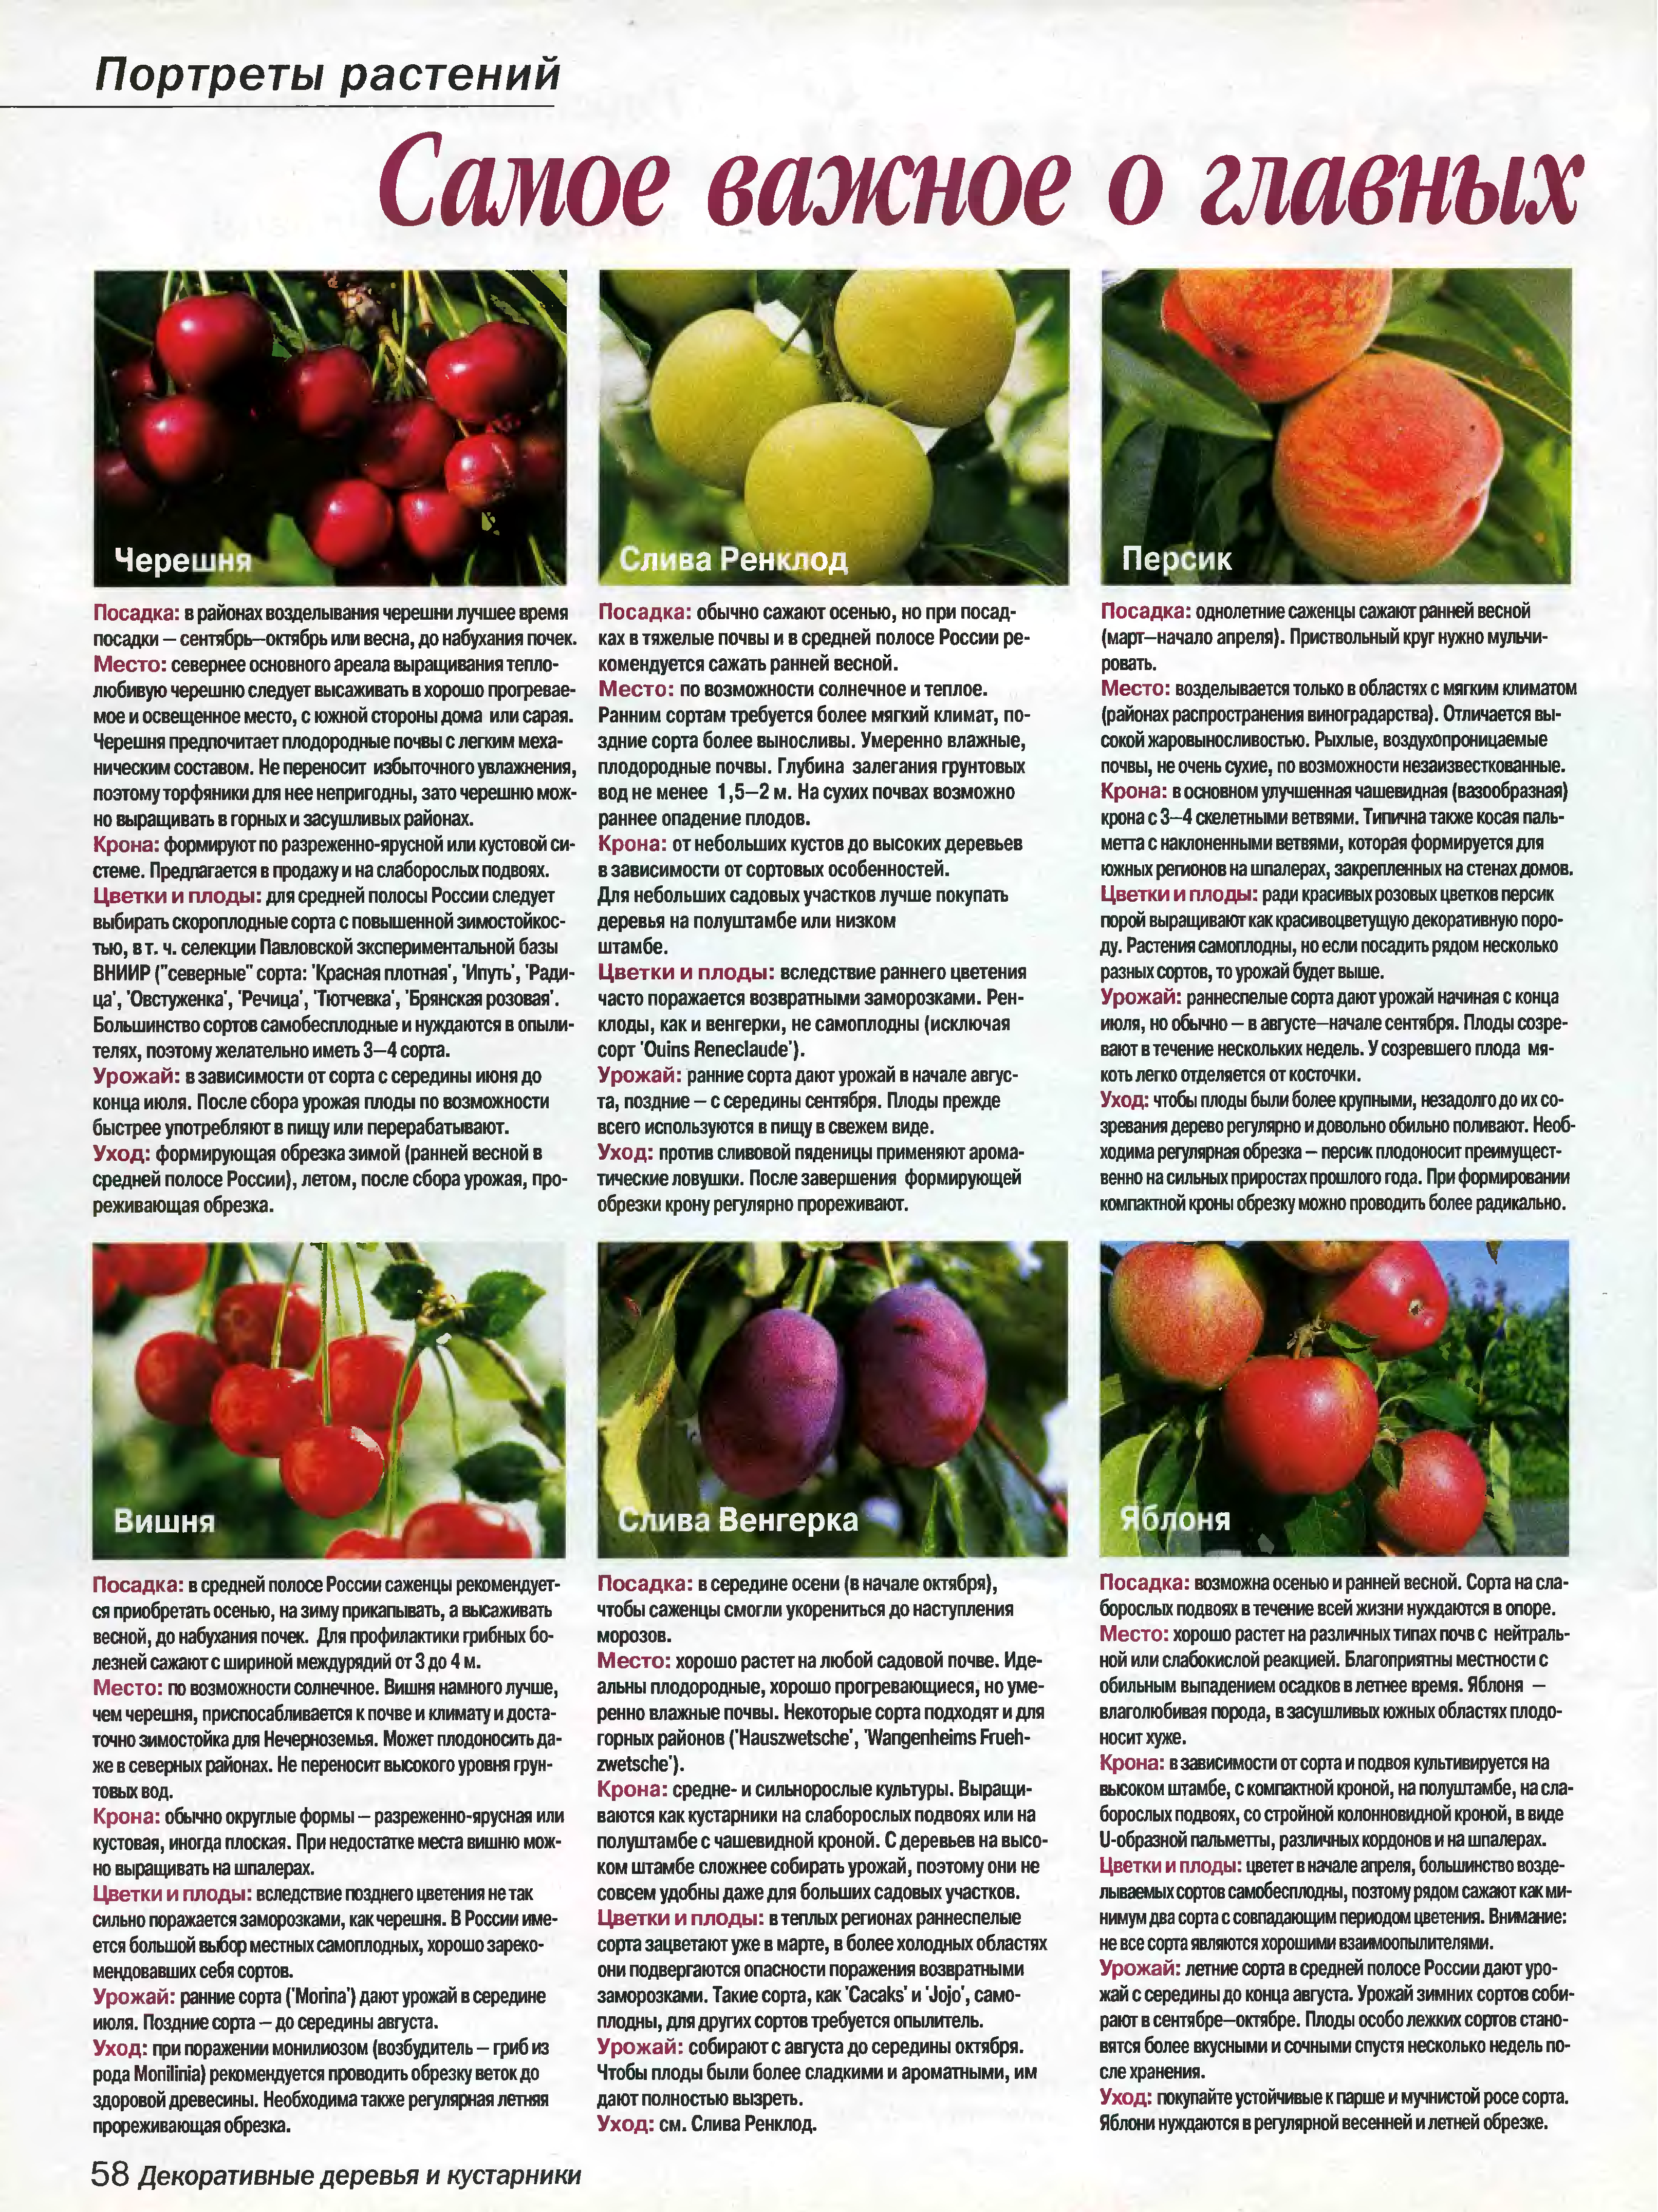 Описание сорта черешни валерий чкалов и характеристики плодов, плюсы и минусы, выращивание